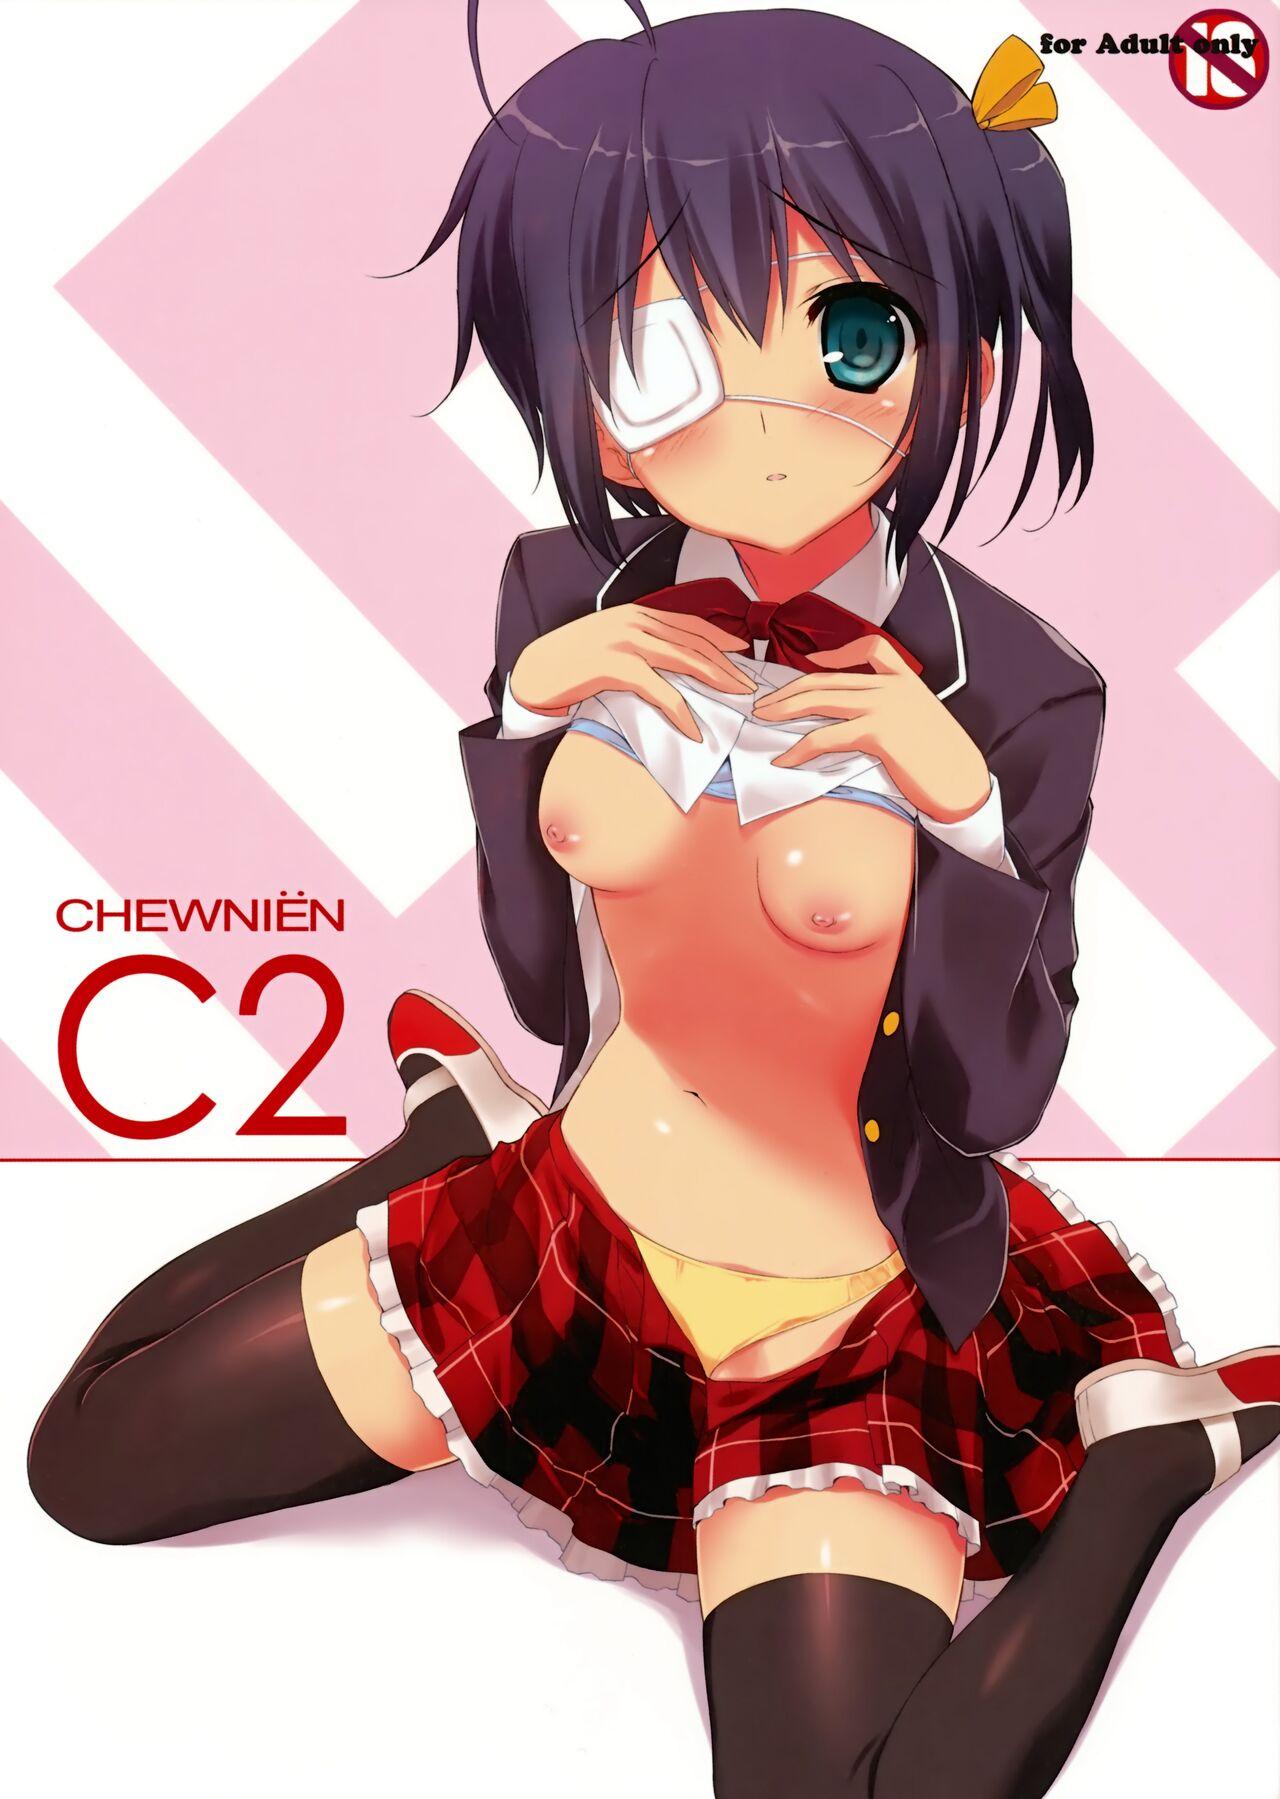 Newbie CHEWNIEN C2 - Chuunibyou demo koi ga shitai Chileno - Picture 1